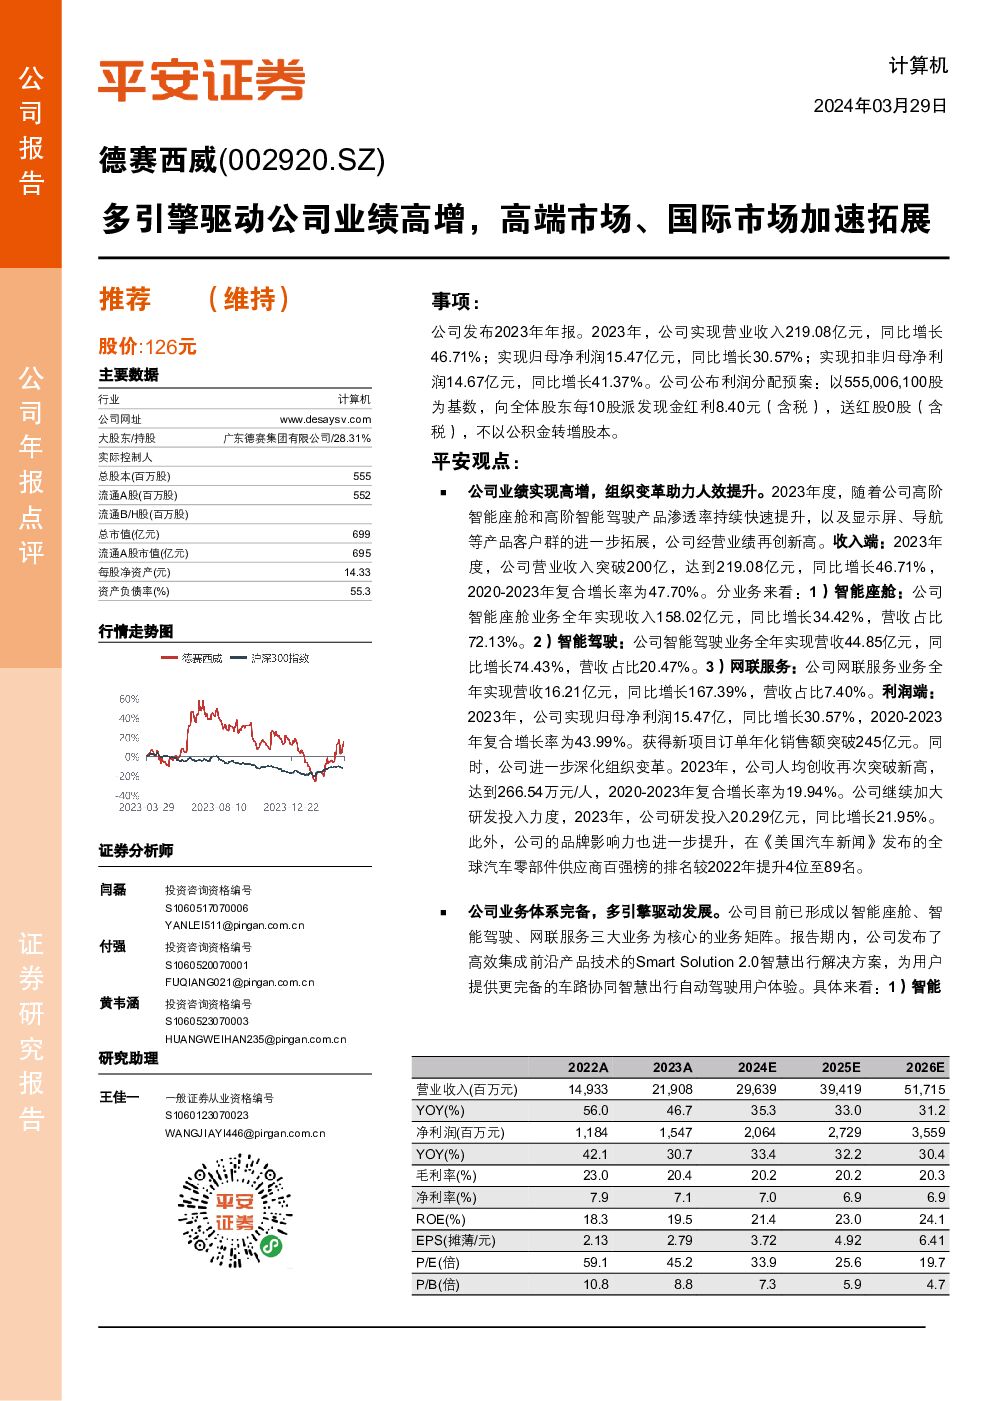 德赛西威 多引擎驱动公司业绩高增，高端市场、国际市场加速拓展 平安证券 2024-03-29（4页） 附下载